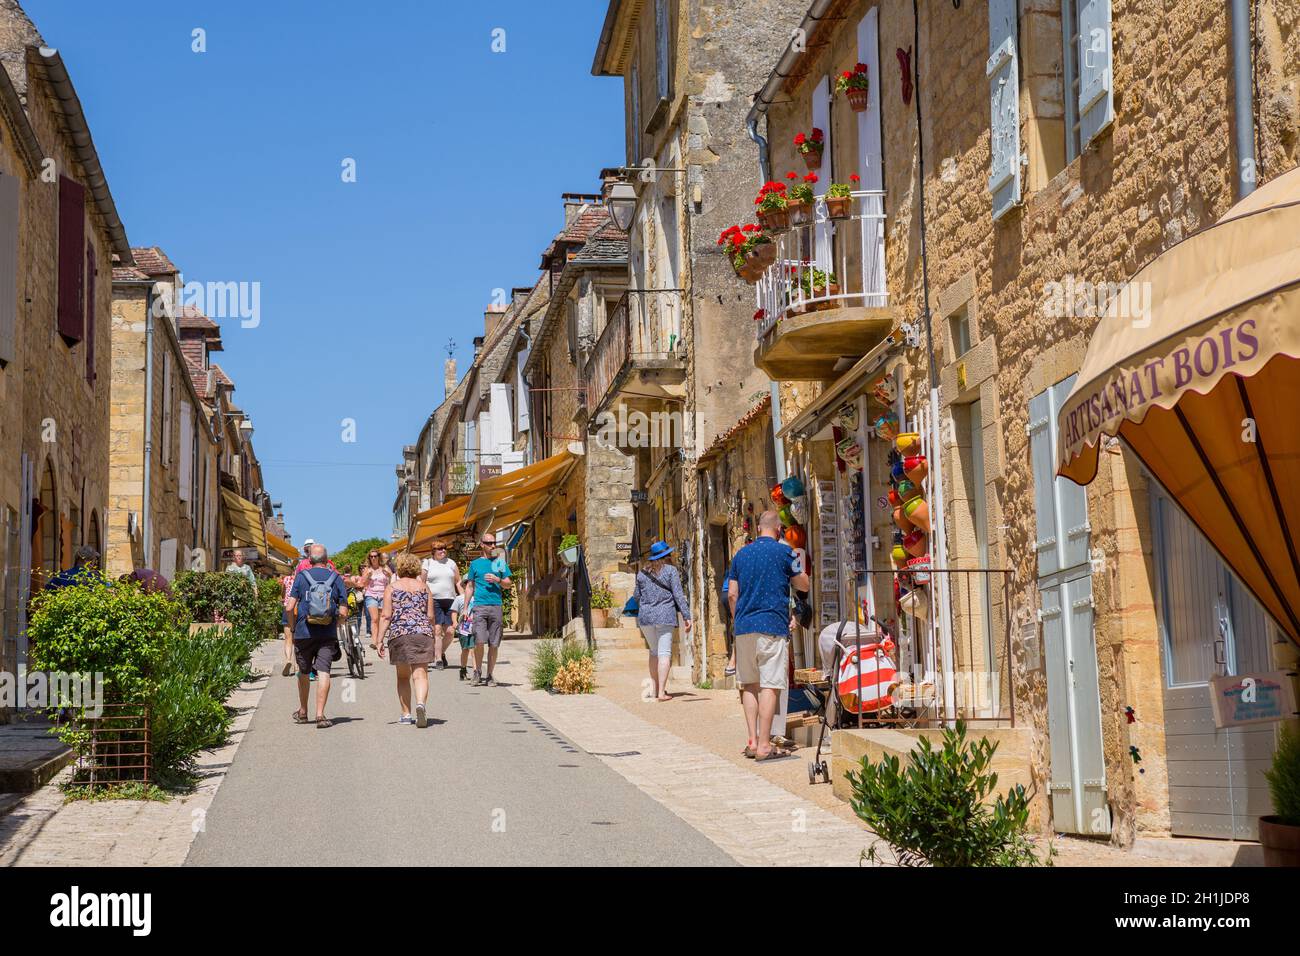 Domme, Francia - 14 agosto 2019:i turisti in visita alla città medievale di Domme in Dordogne Francia Foto Stock